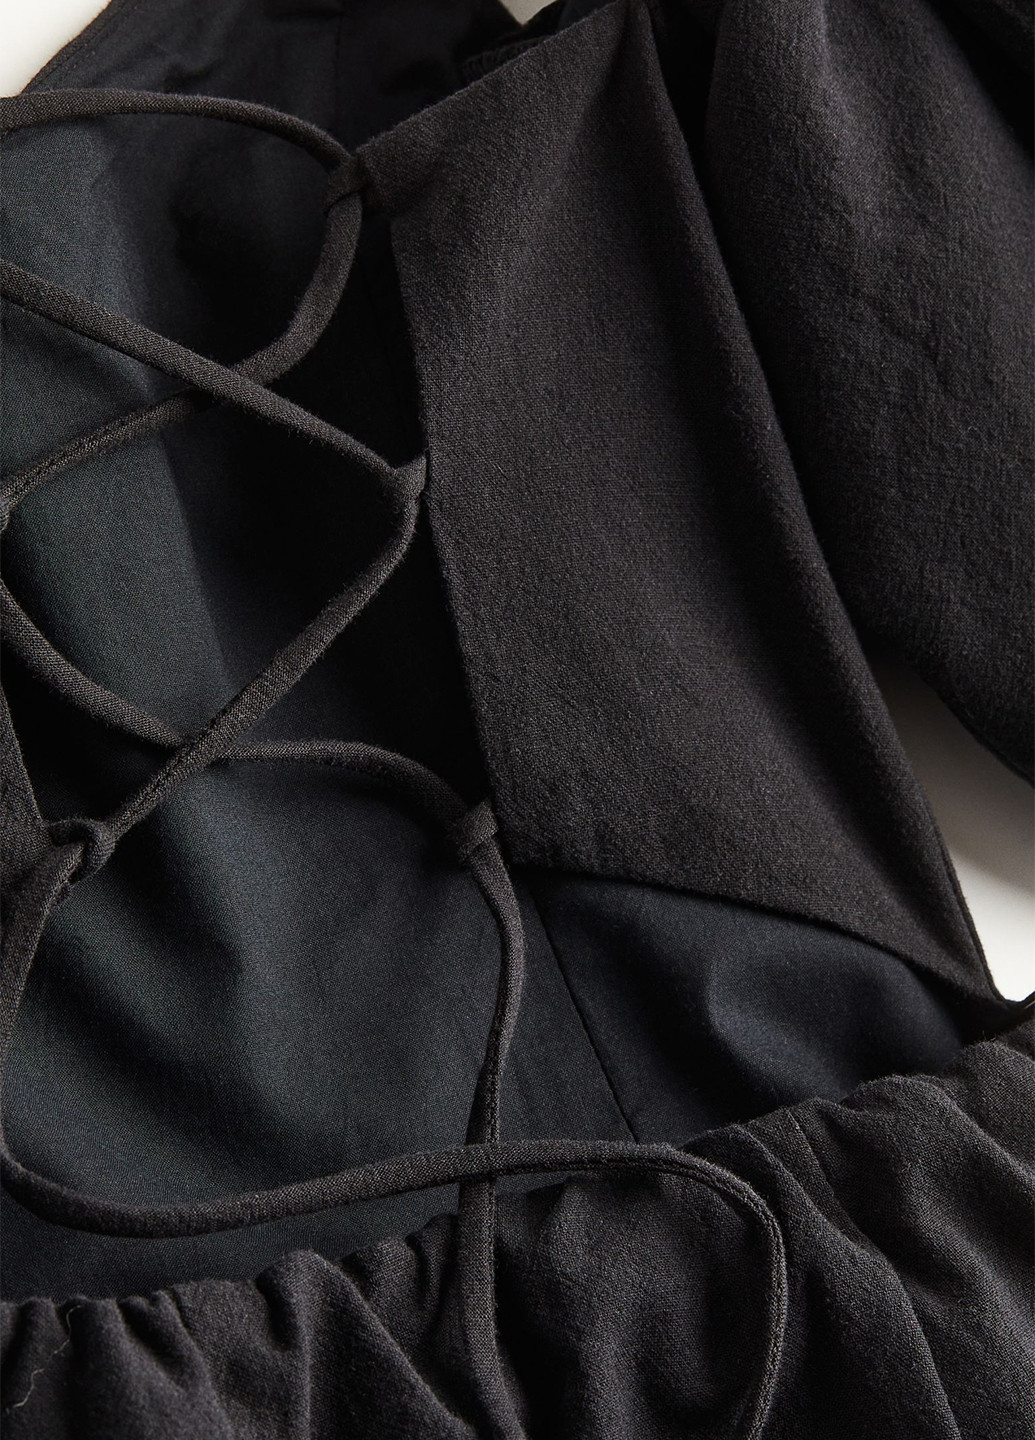 Черное коктейльное платье с открытыми плечами, с открытой спиной H&M однотонное